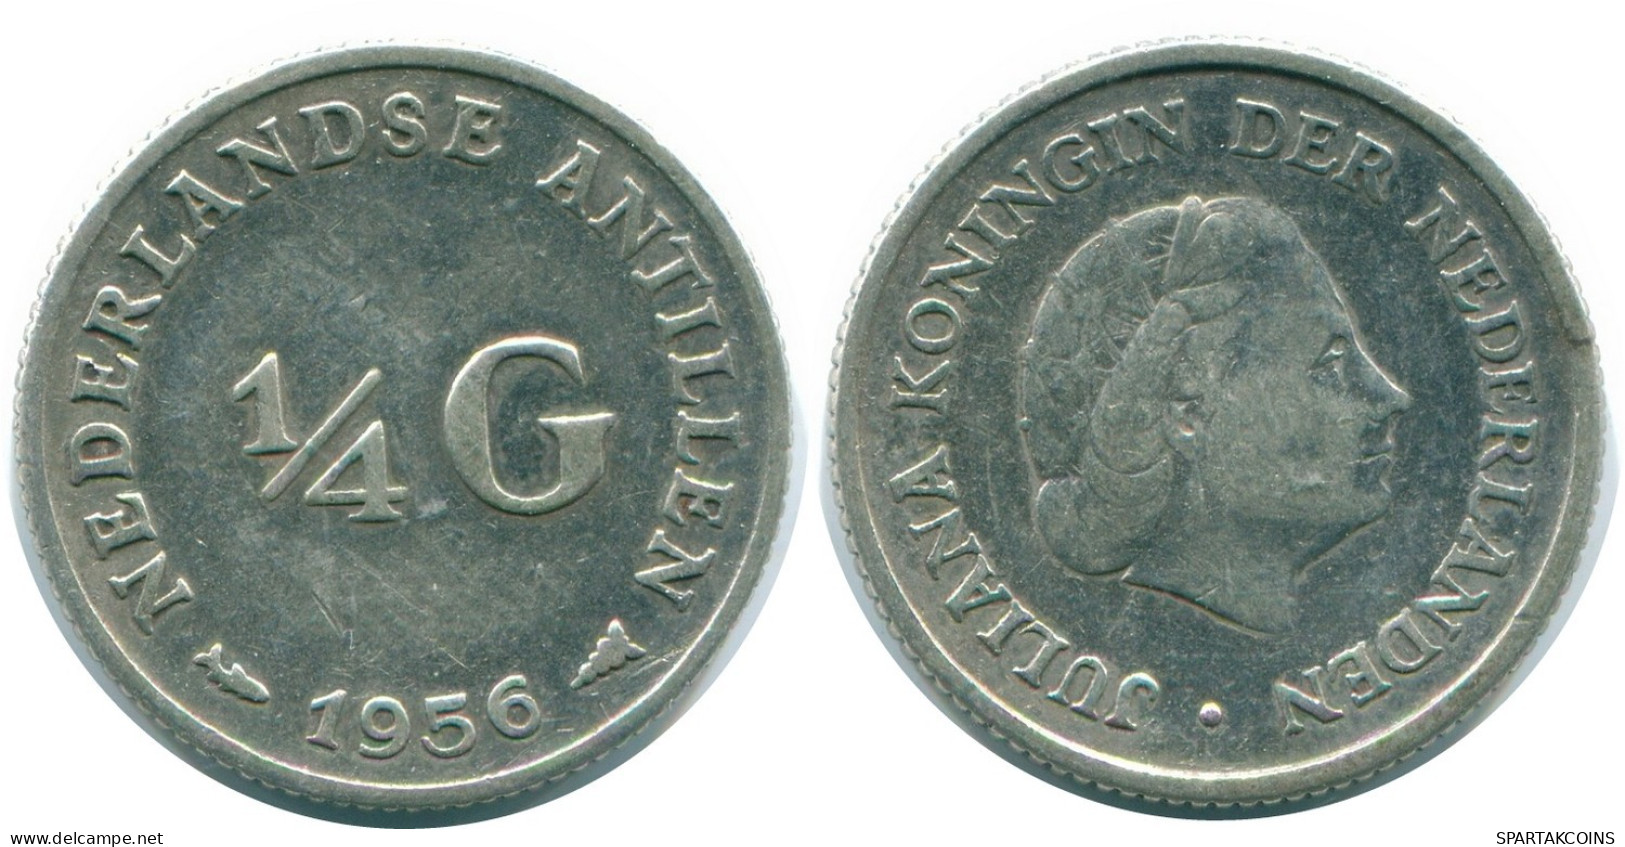 1/4 GULDEN 1956 NIEDERLÄNDISCHE ANTILLEN SILBER Koloniale Münze #NL10928.4.D.A - Antilles Néerlandaises